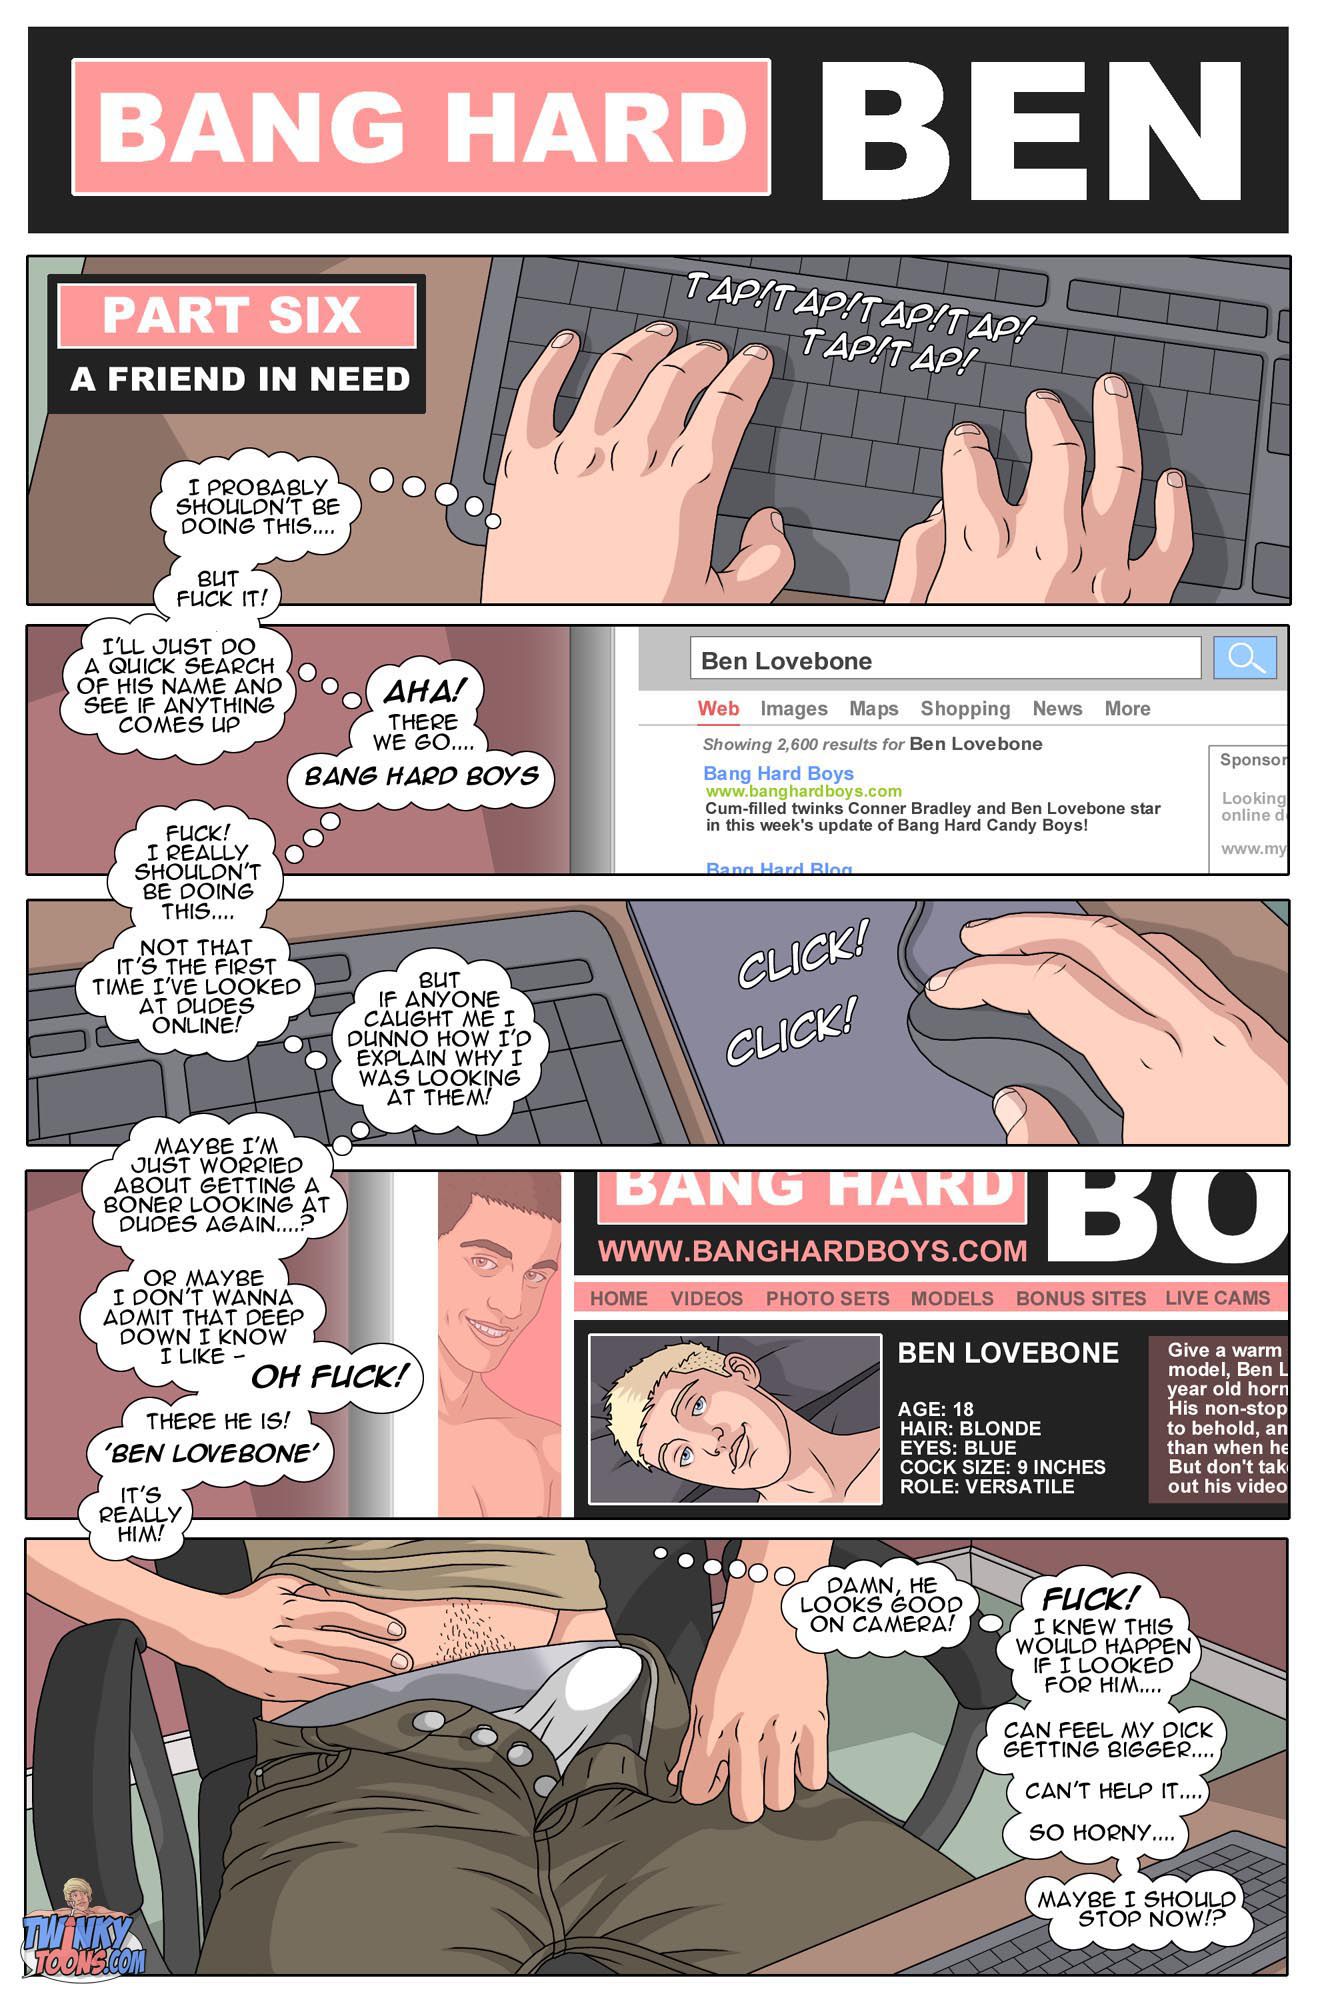 ♺ Bang Hard Ben Parts 1 to 10 PDF.